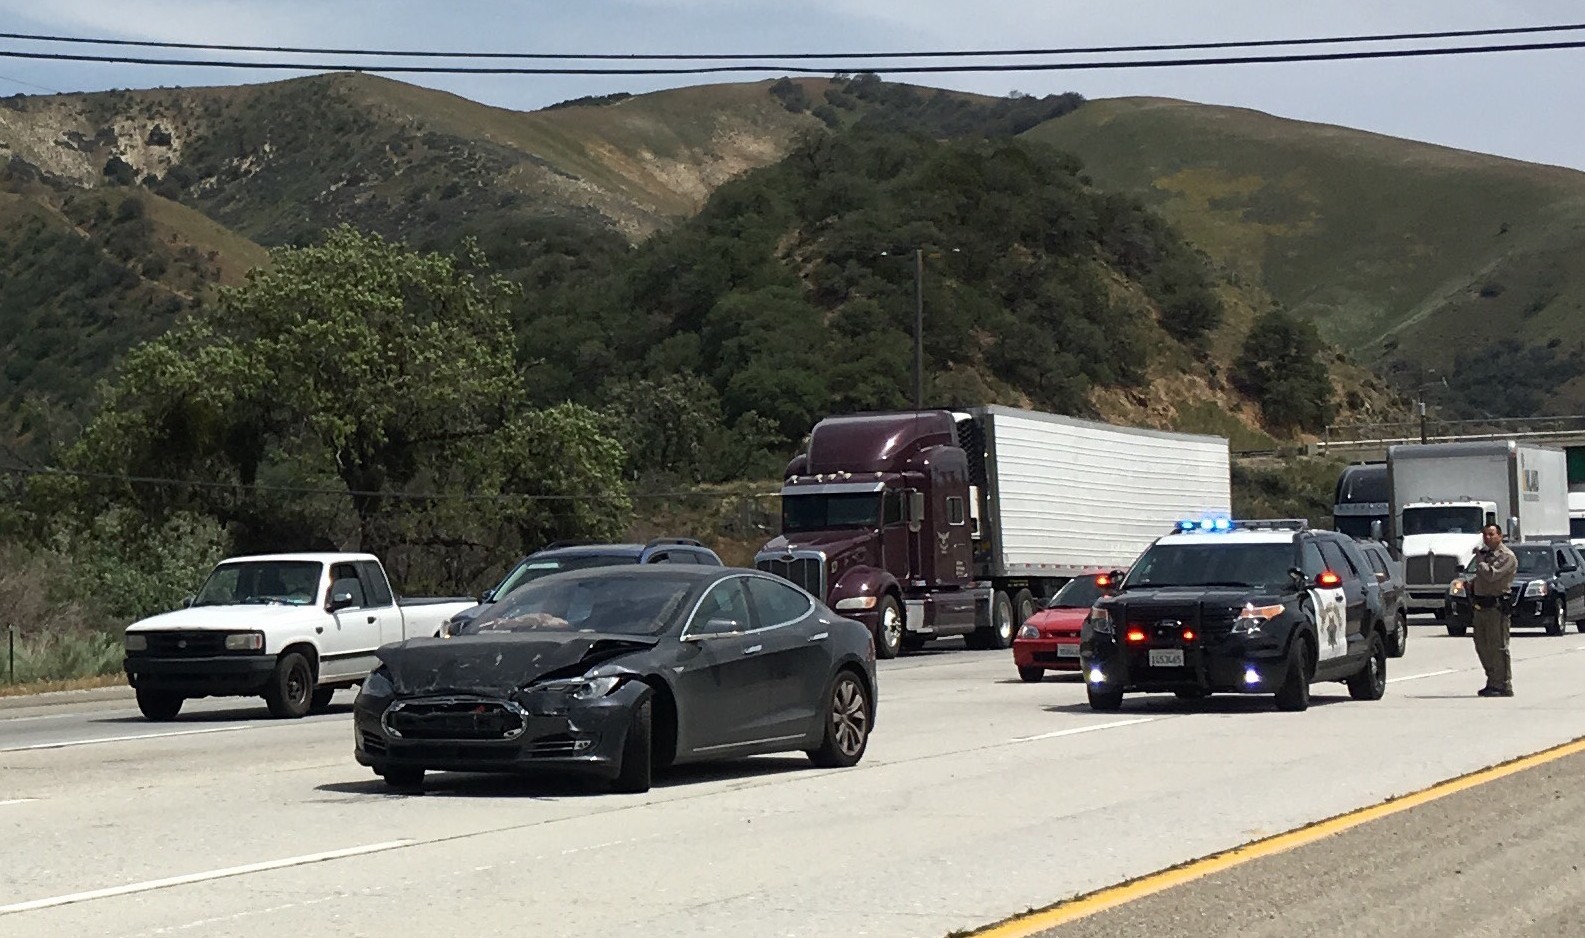 Автомобиль Model S опять врезался — и снова по вине водителя. Tesla проверила логи - 1